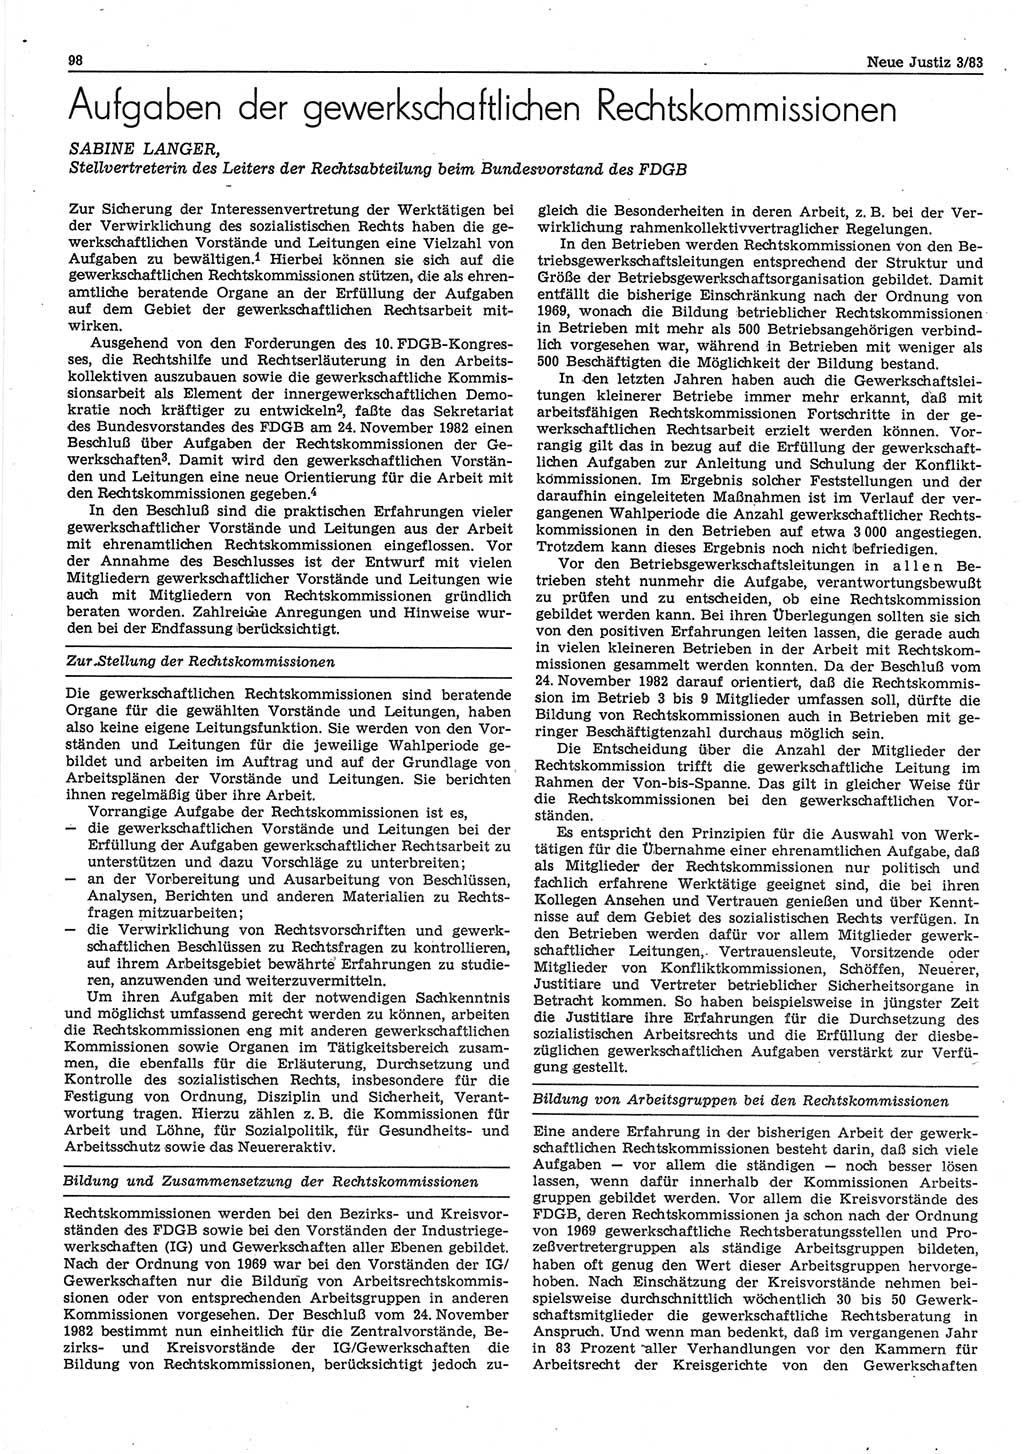 Neue Justiz (NJ), Zeitschrift für sozialistisches Recht und Gesetzlichkeit [Deutsche Demokratische Republik (DDR)], 37. Jahrgang 1983, Seite 98 (NJ DDR 1983, S. 98)